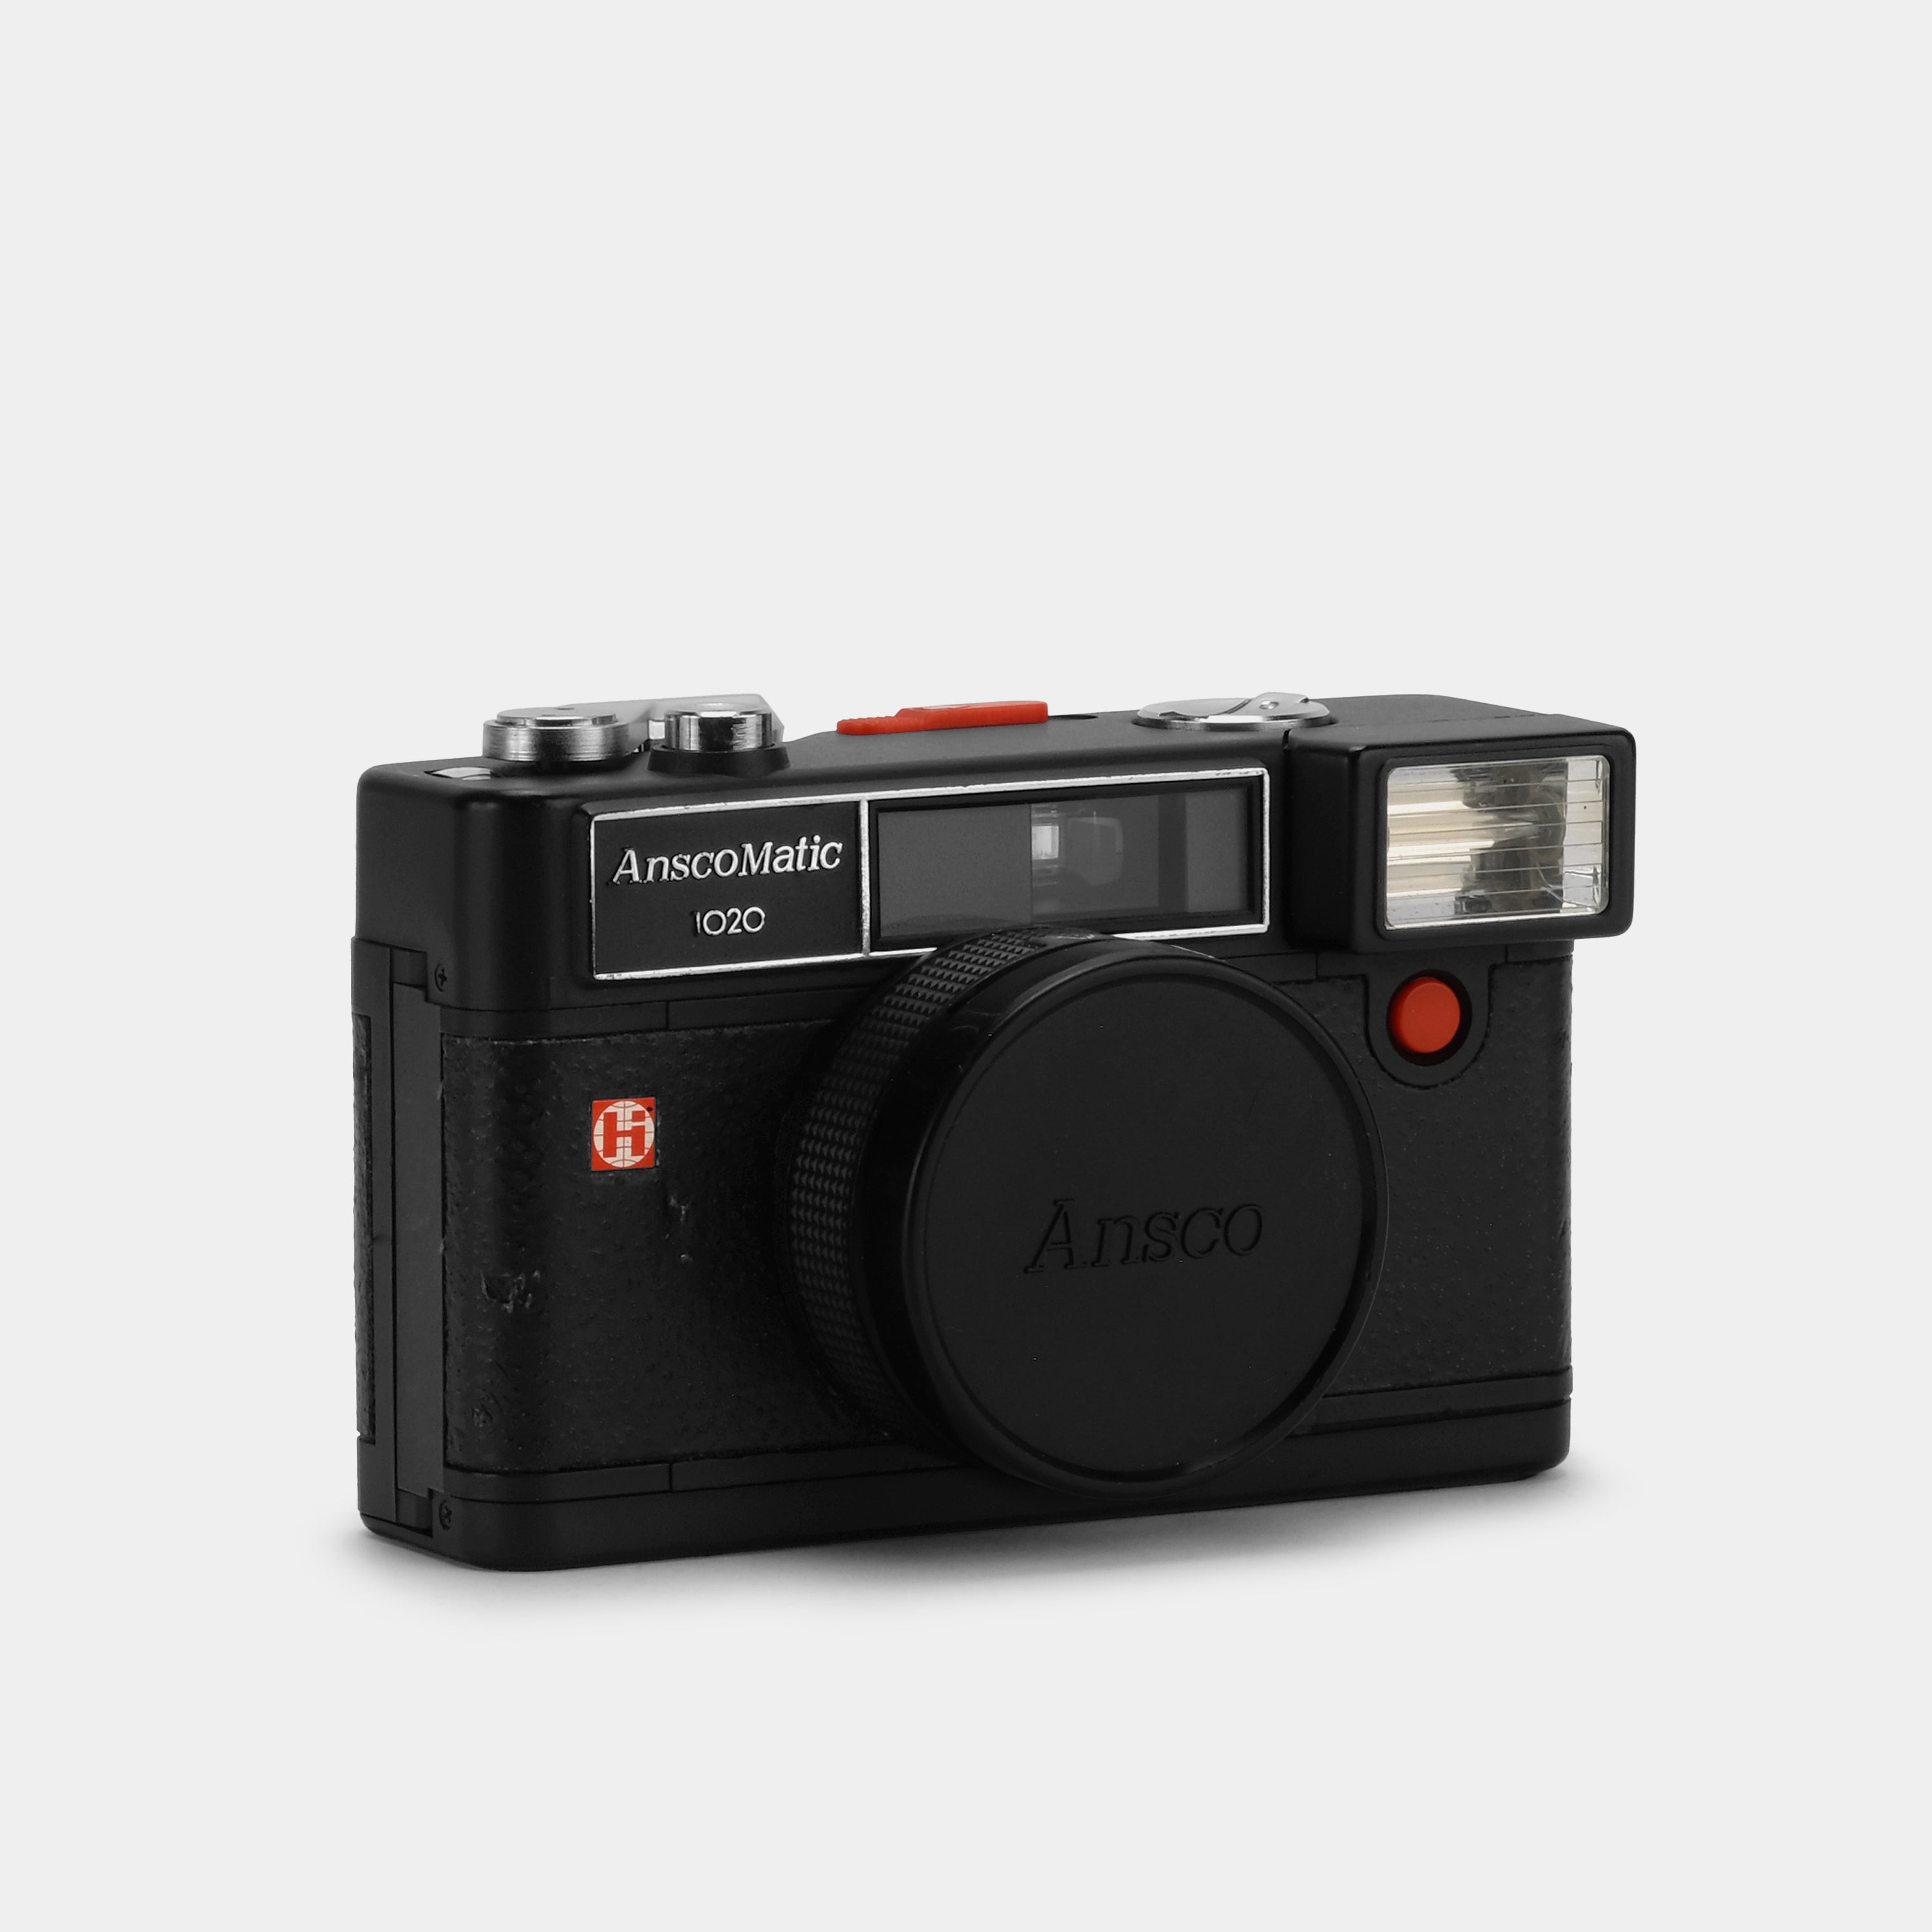 Ansco AnscoMatic 35mm Scale Focus Film Camera